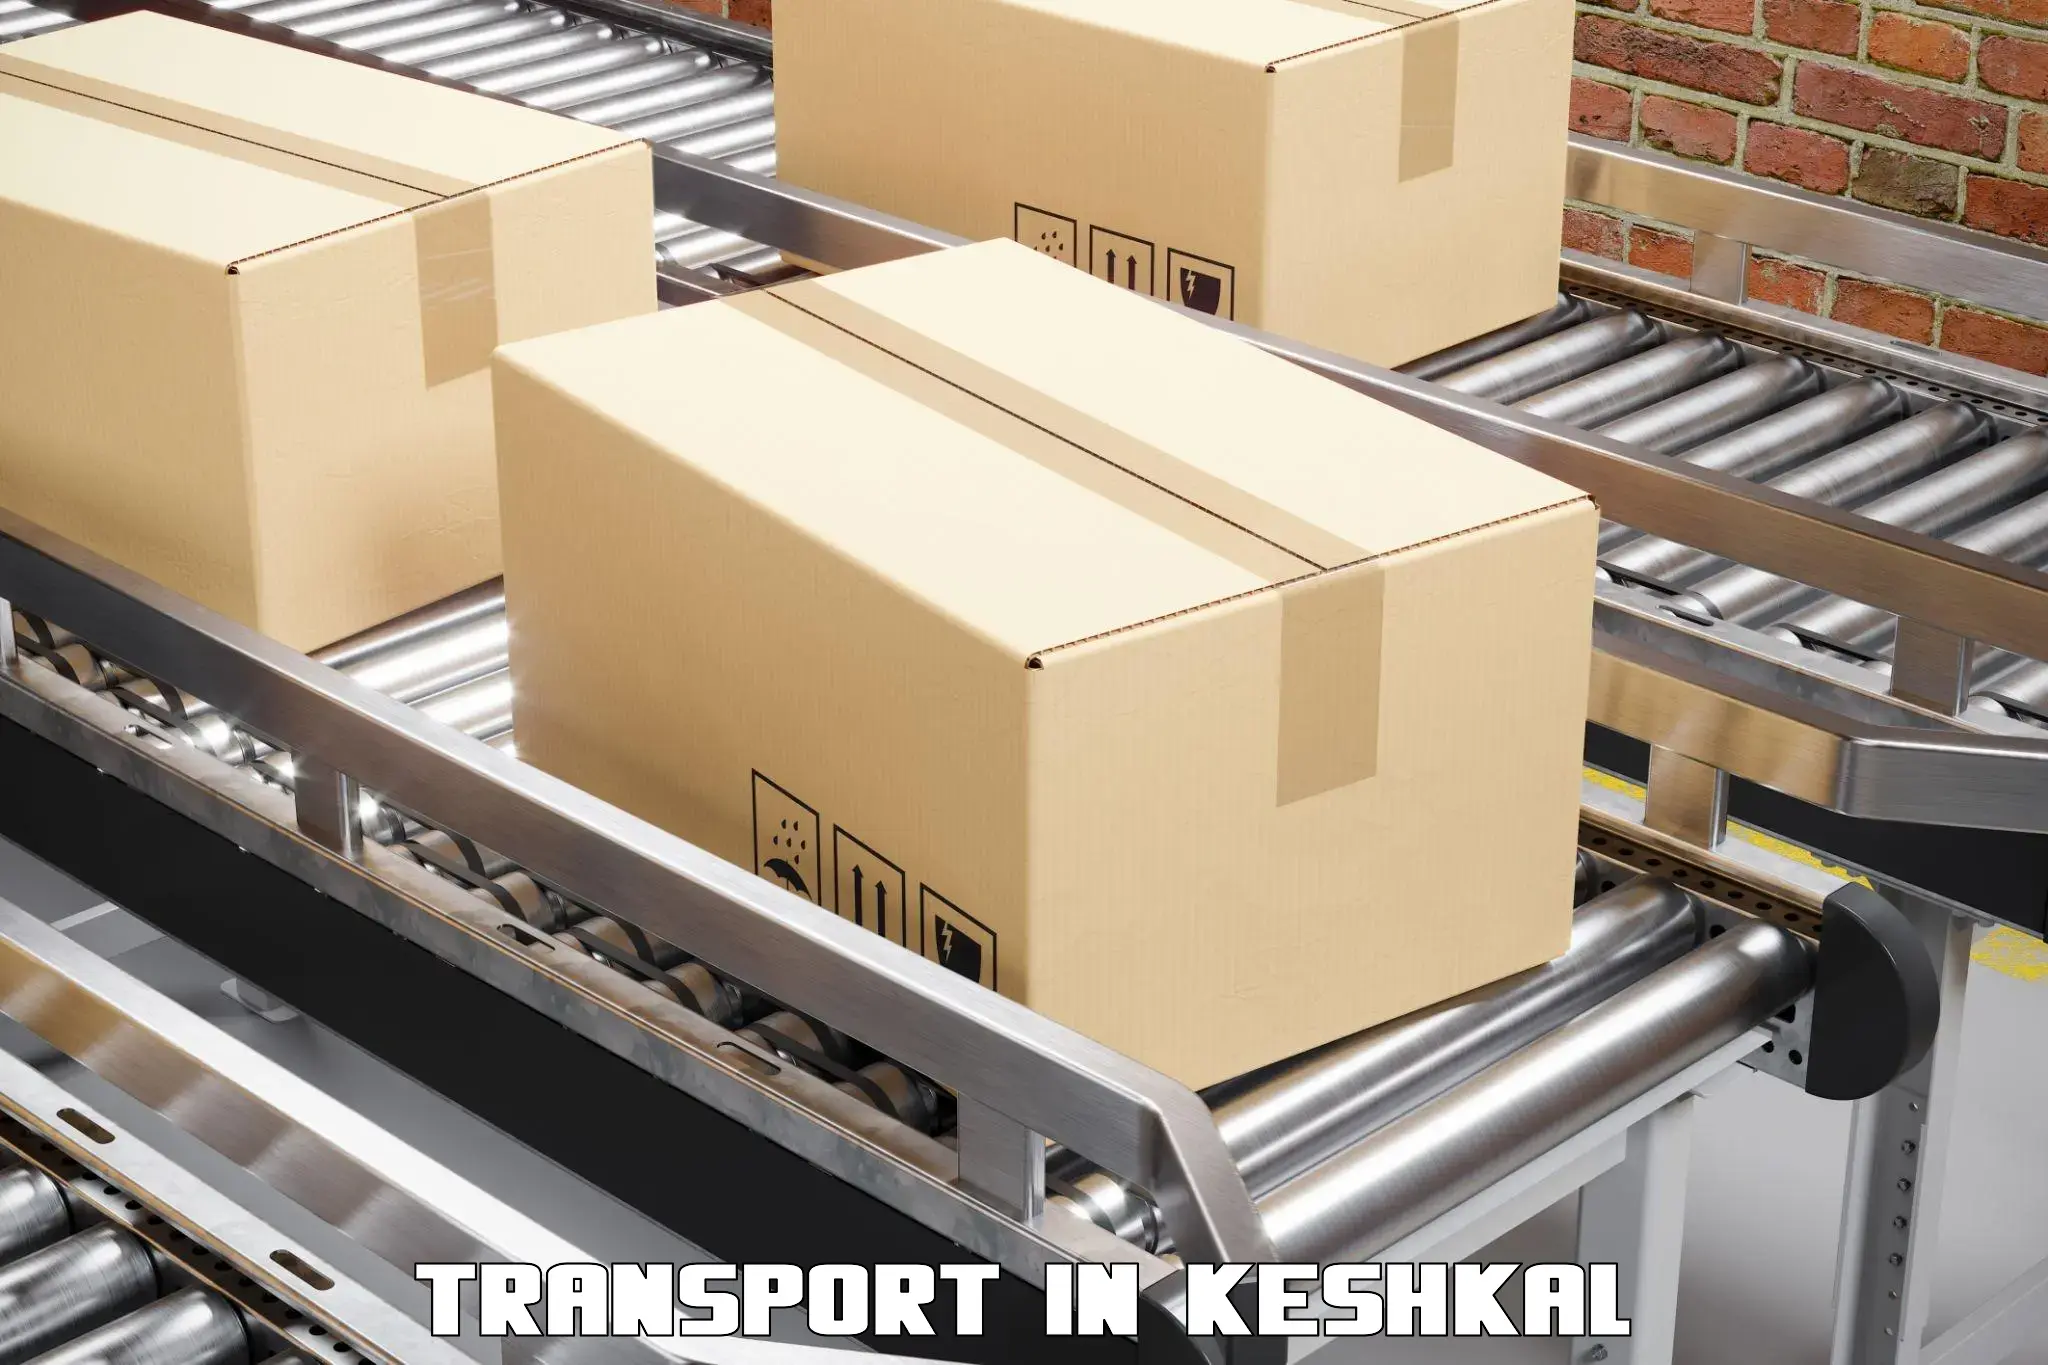 Cargo train transport services in keshkal